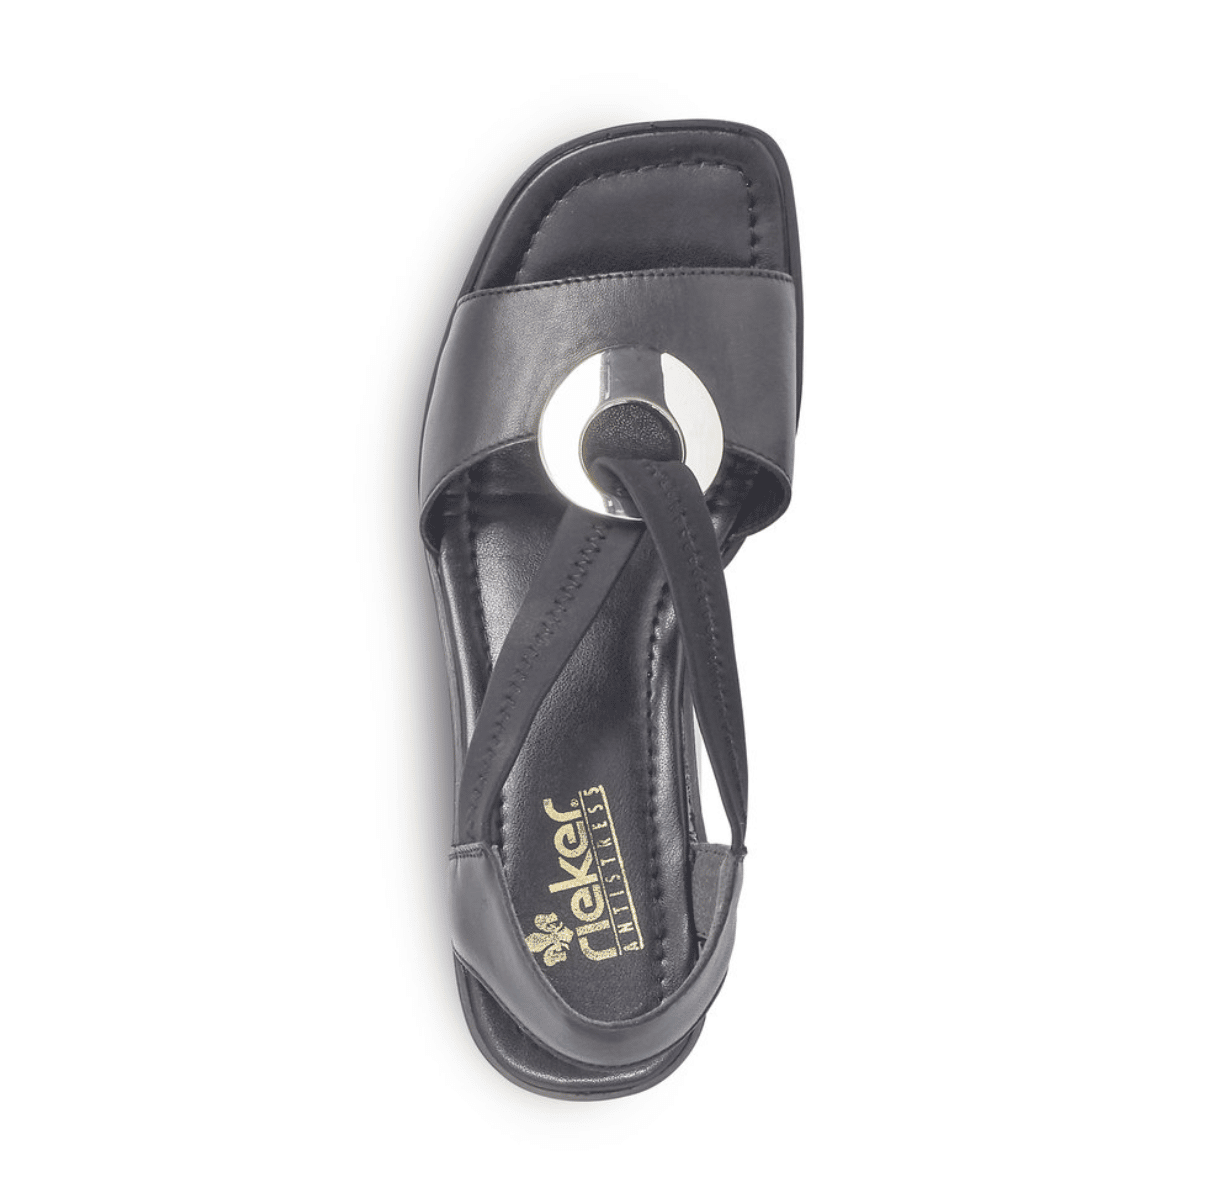 Damkjaer Sko Online Shop - 62662 - Sandal til dame